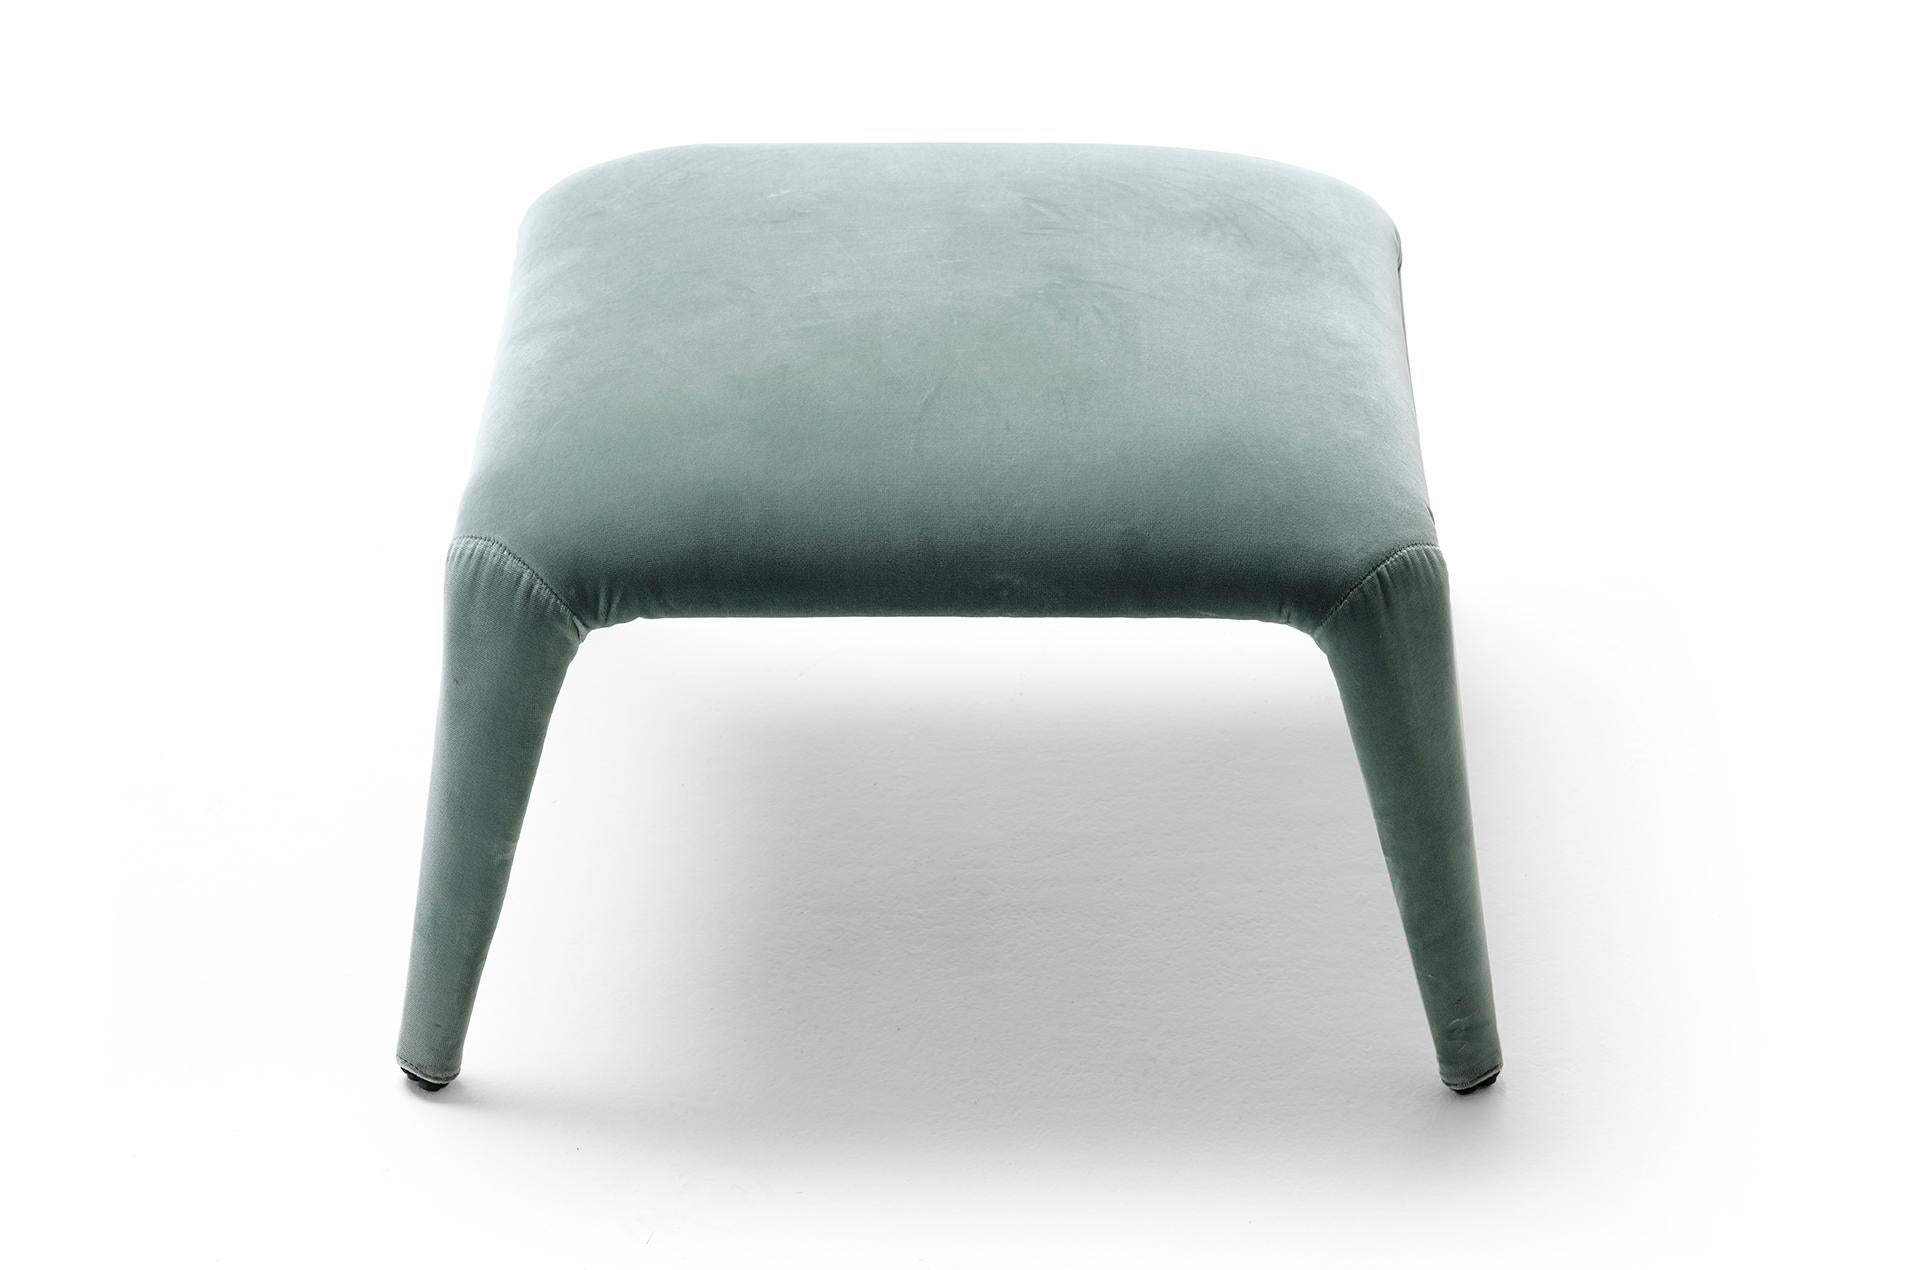 Der Nova Pouf ist wie geschaffen für unseren gleichnamigen Sessel. Es handelt sich um einen leichten, edel anmutenden Textilhocker mit vollständig abnehmbarem Stoffbezug. Die innere Struktur besteht aus einem minimalen Metallrohrskelett, das die